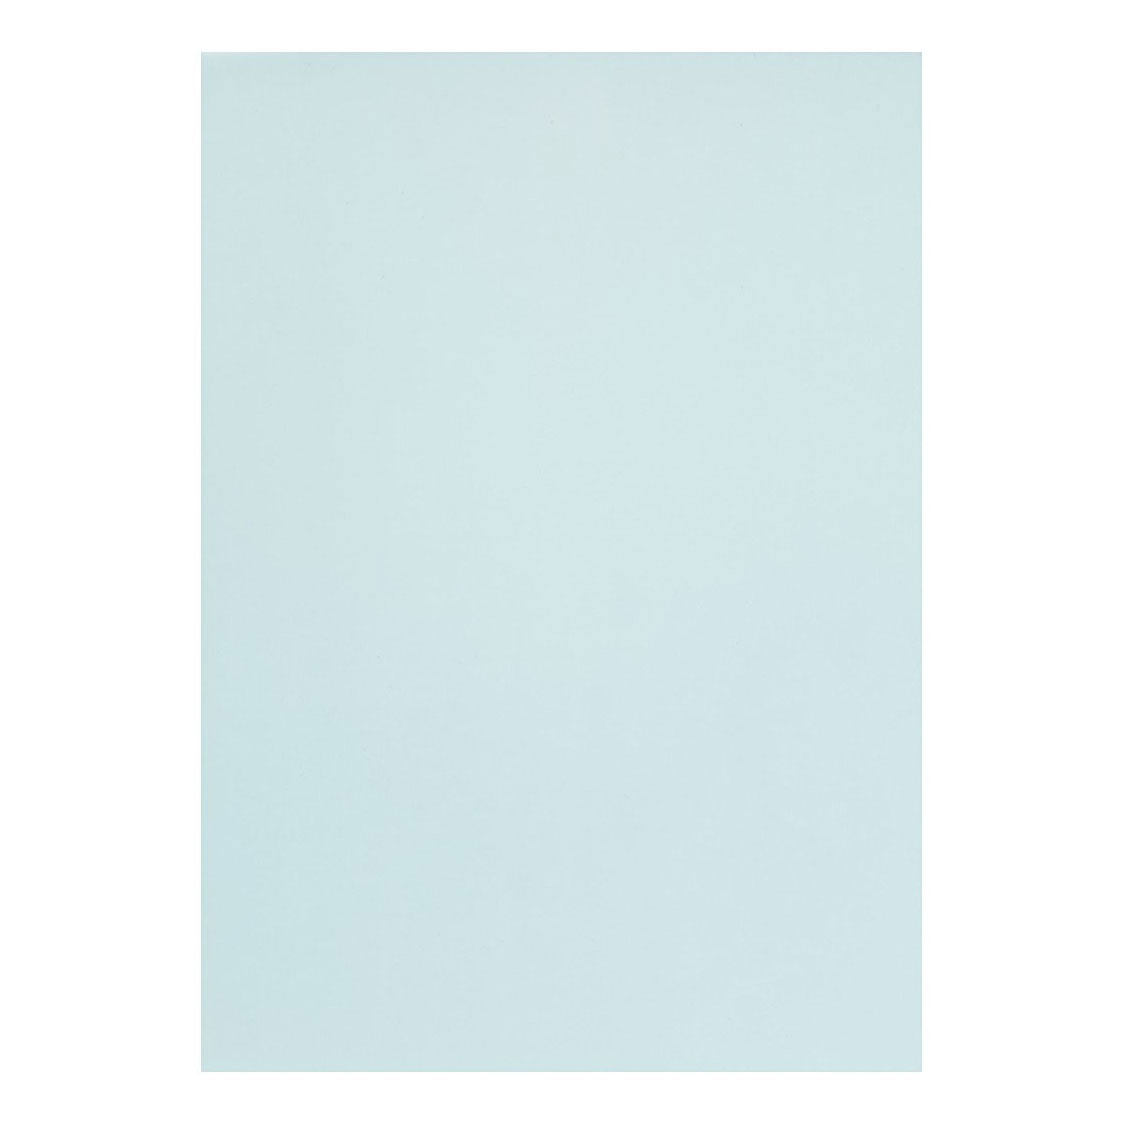 Papier vélin A4 bleu clair, 10 feuilles